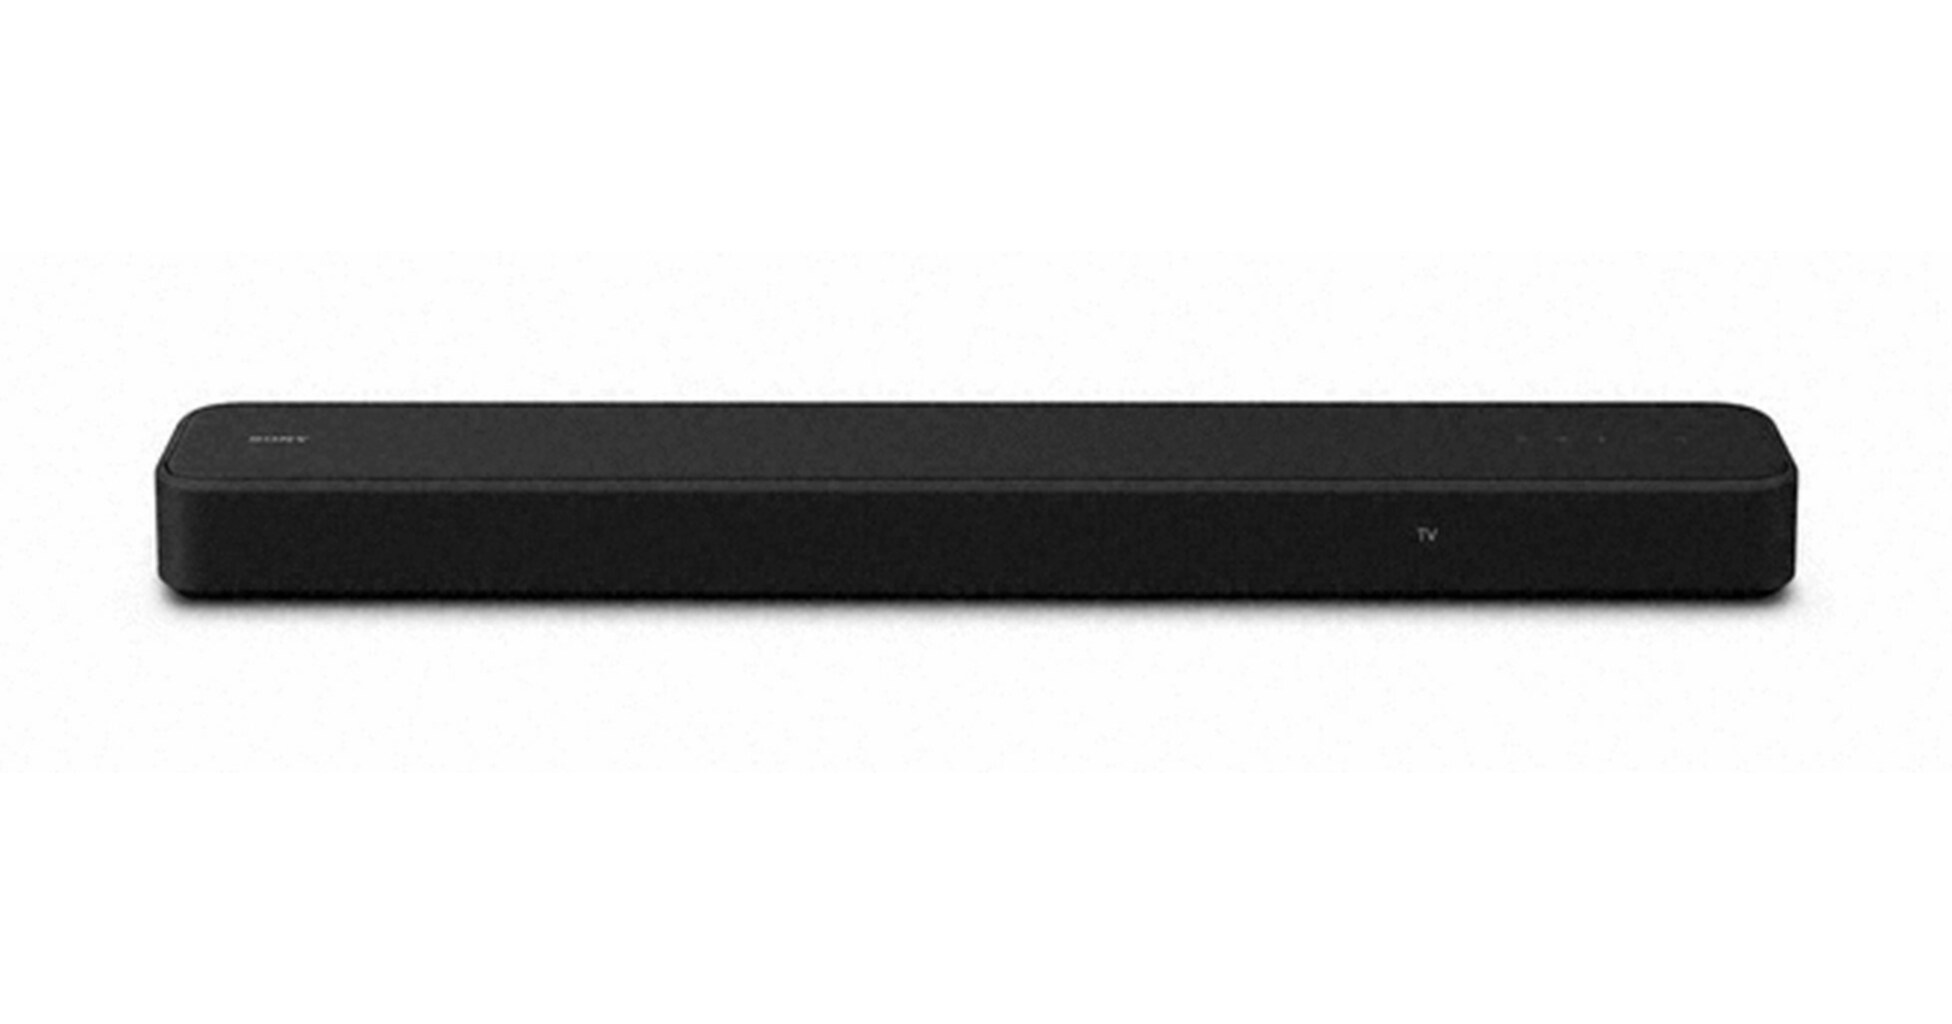 Sony Electronics presenta la barra de sonido Dolby Atmos® de 3.1 canales HT-S2000 que ofrece una experiencia cinematográfica de sonido envolvente